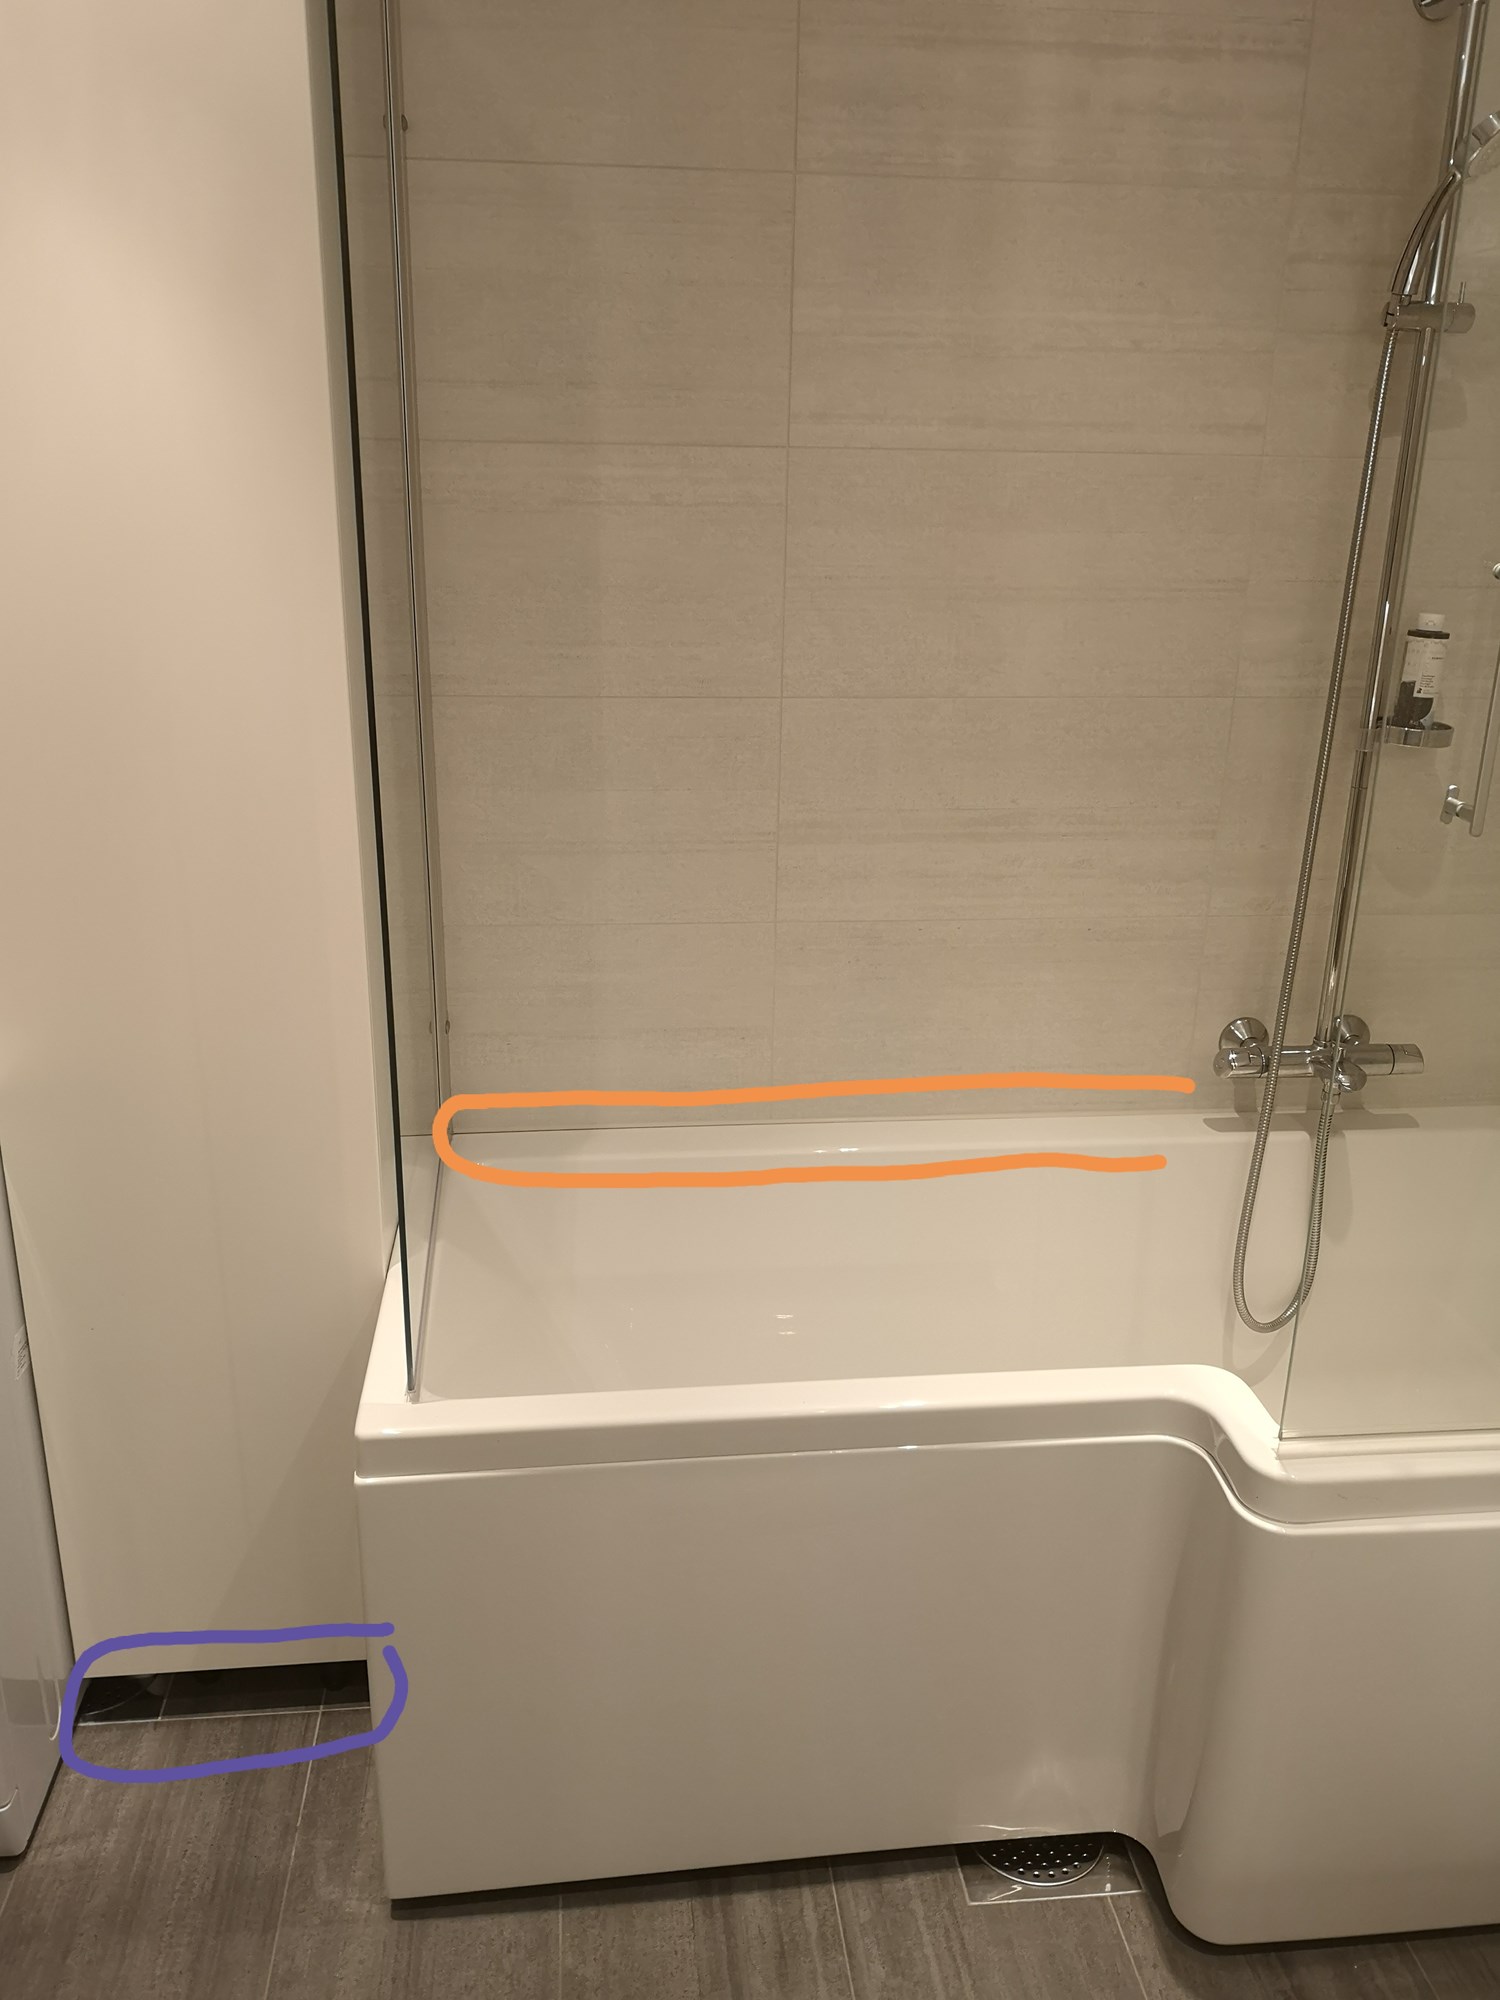 Montering av frittstående badekar - vs vann på veggen/gulvet - Vann på gulvet_4.jpg - Ksenia